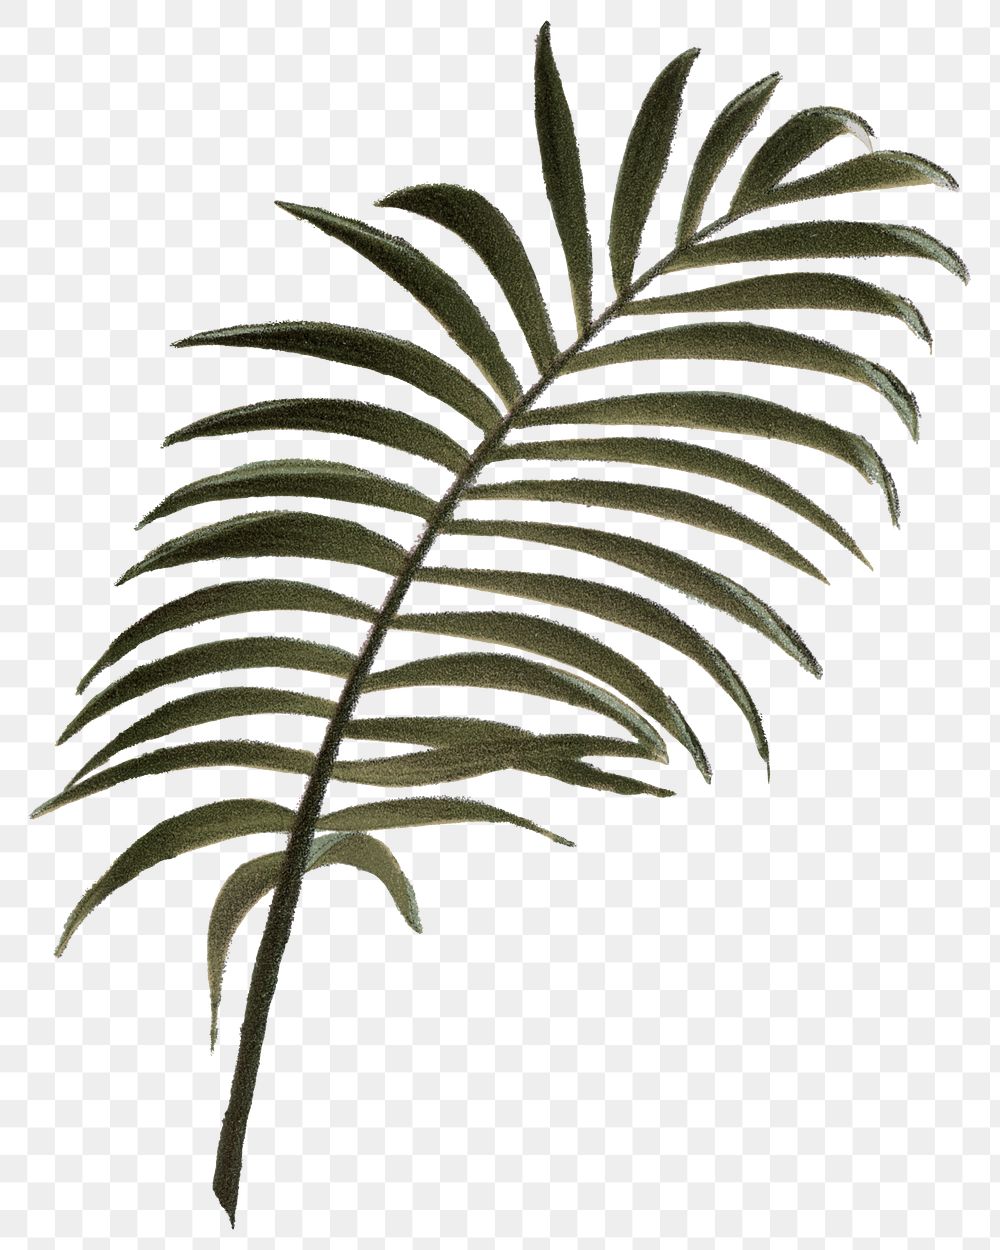 Palm leaf png vintage plant sticker, transparent background